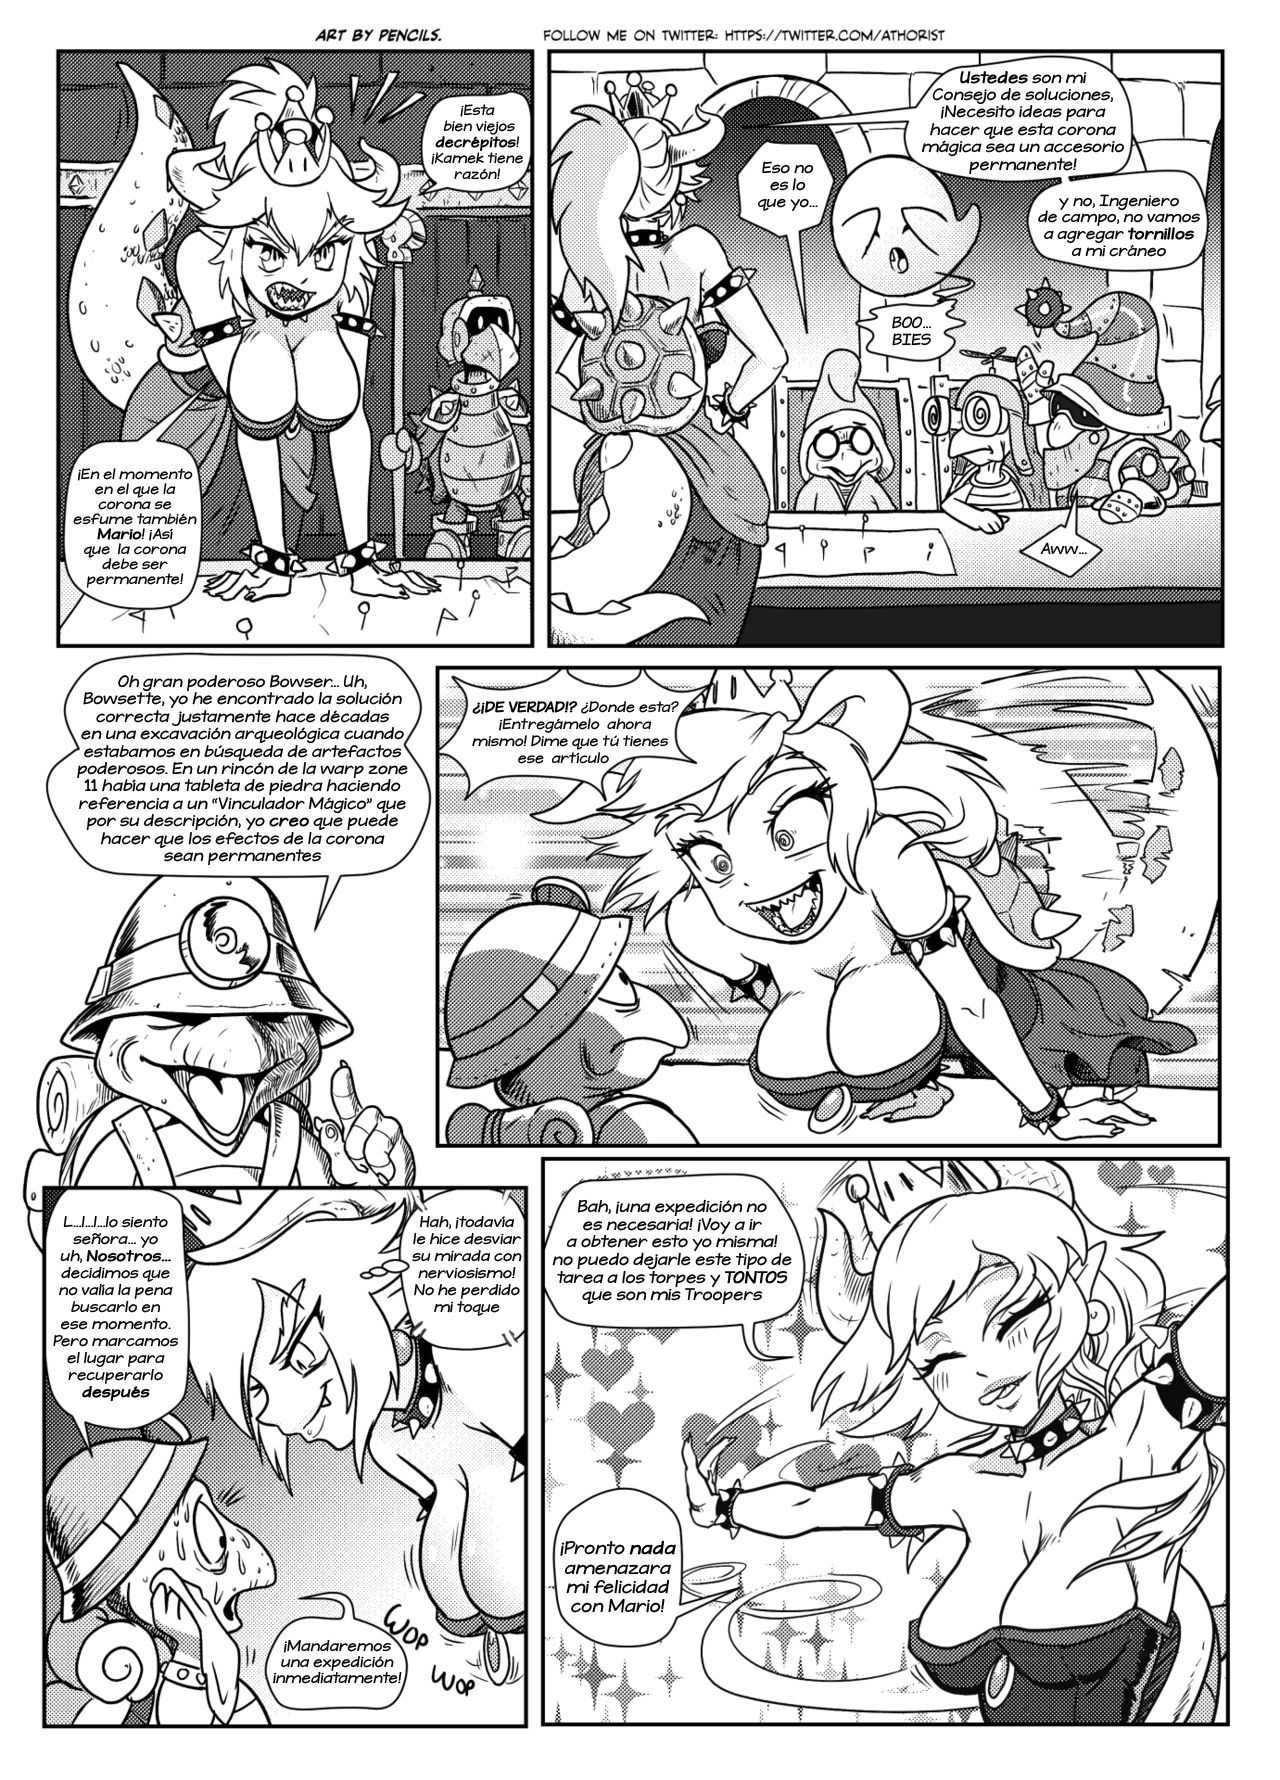 [Pencils] Bowsette Saga Vol.1 Y Vol.2 Completos - Vol.3 En Progreso (Mario Bros.) [Spanish] by Arkoniusx 8